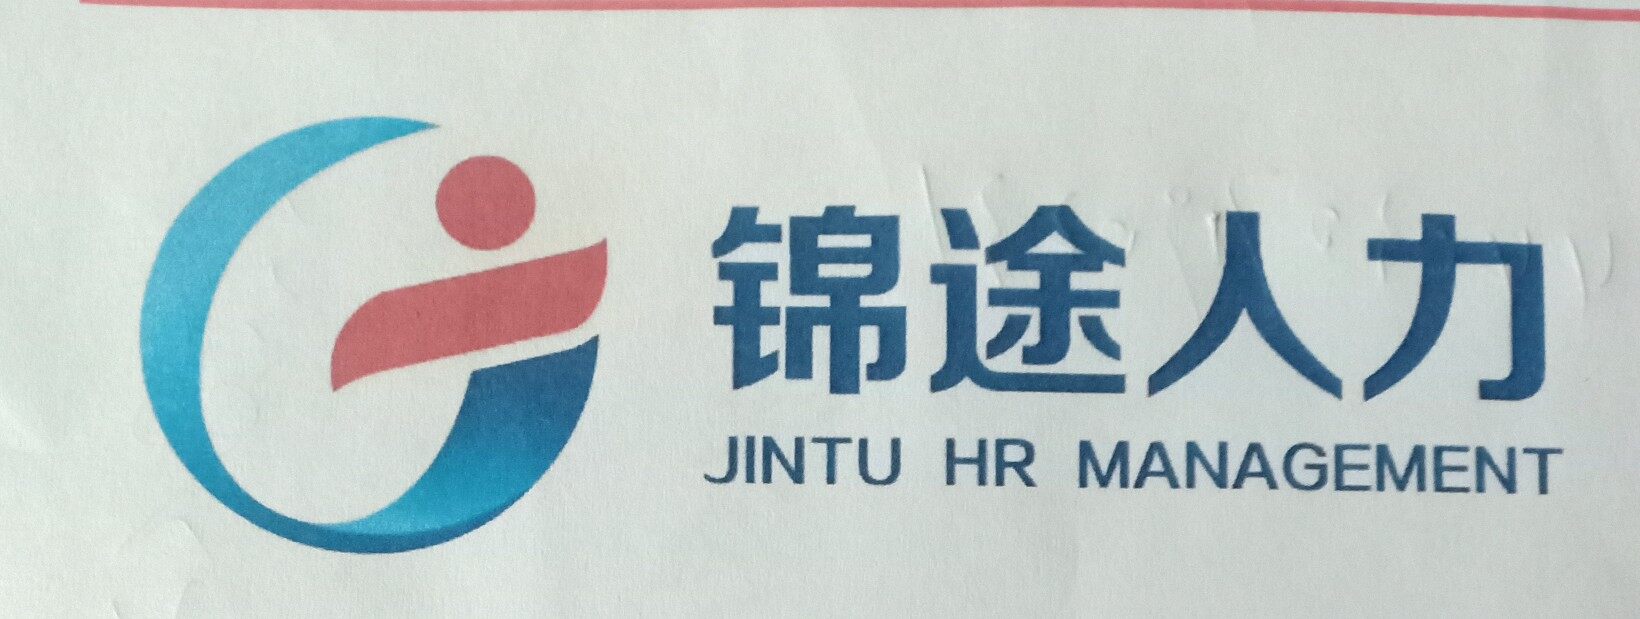 锦途人力资源服务有限公司logo